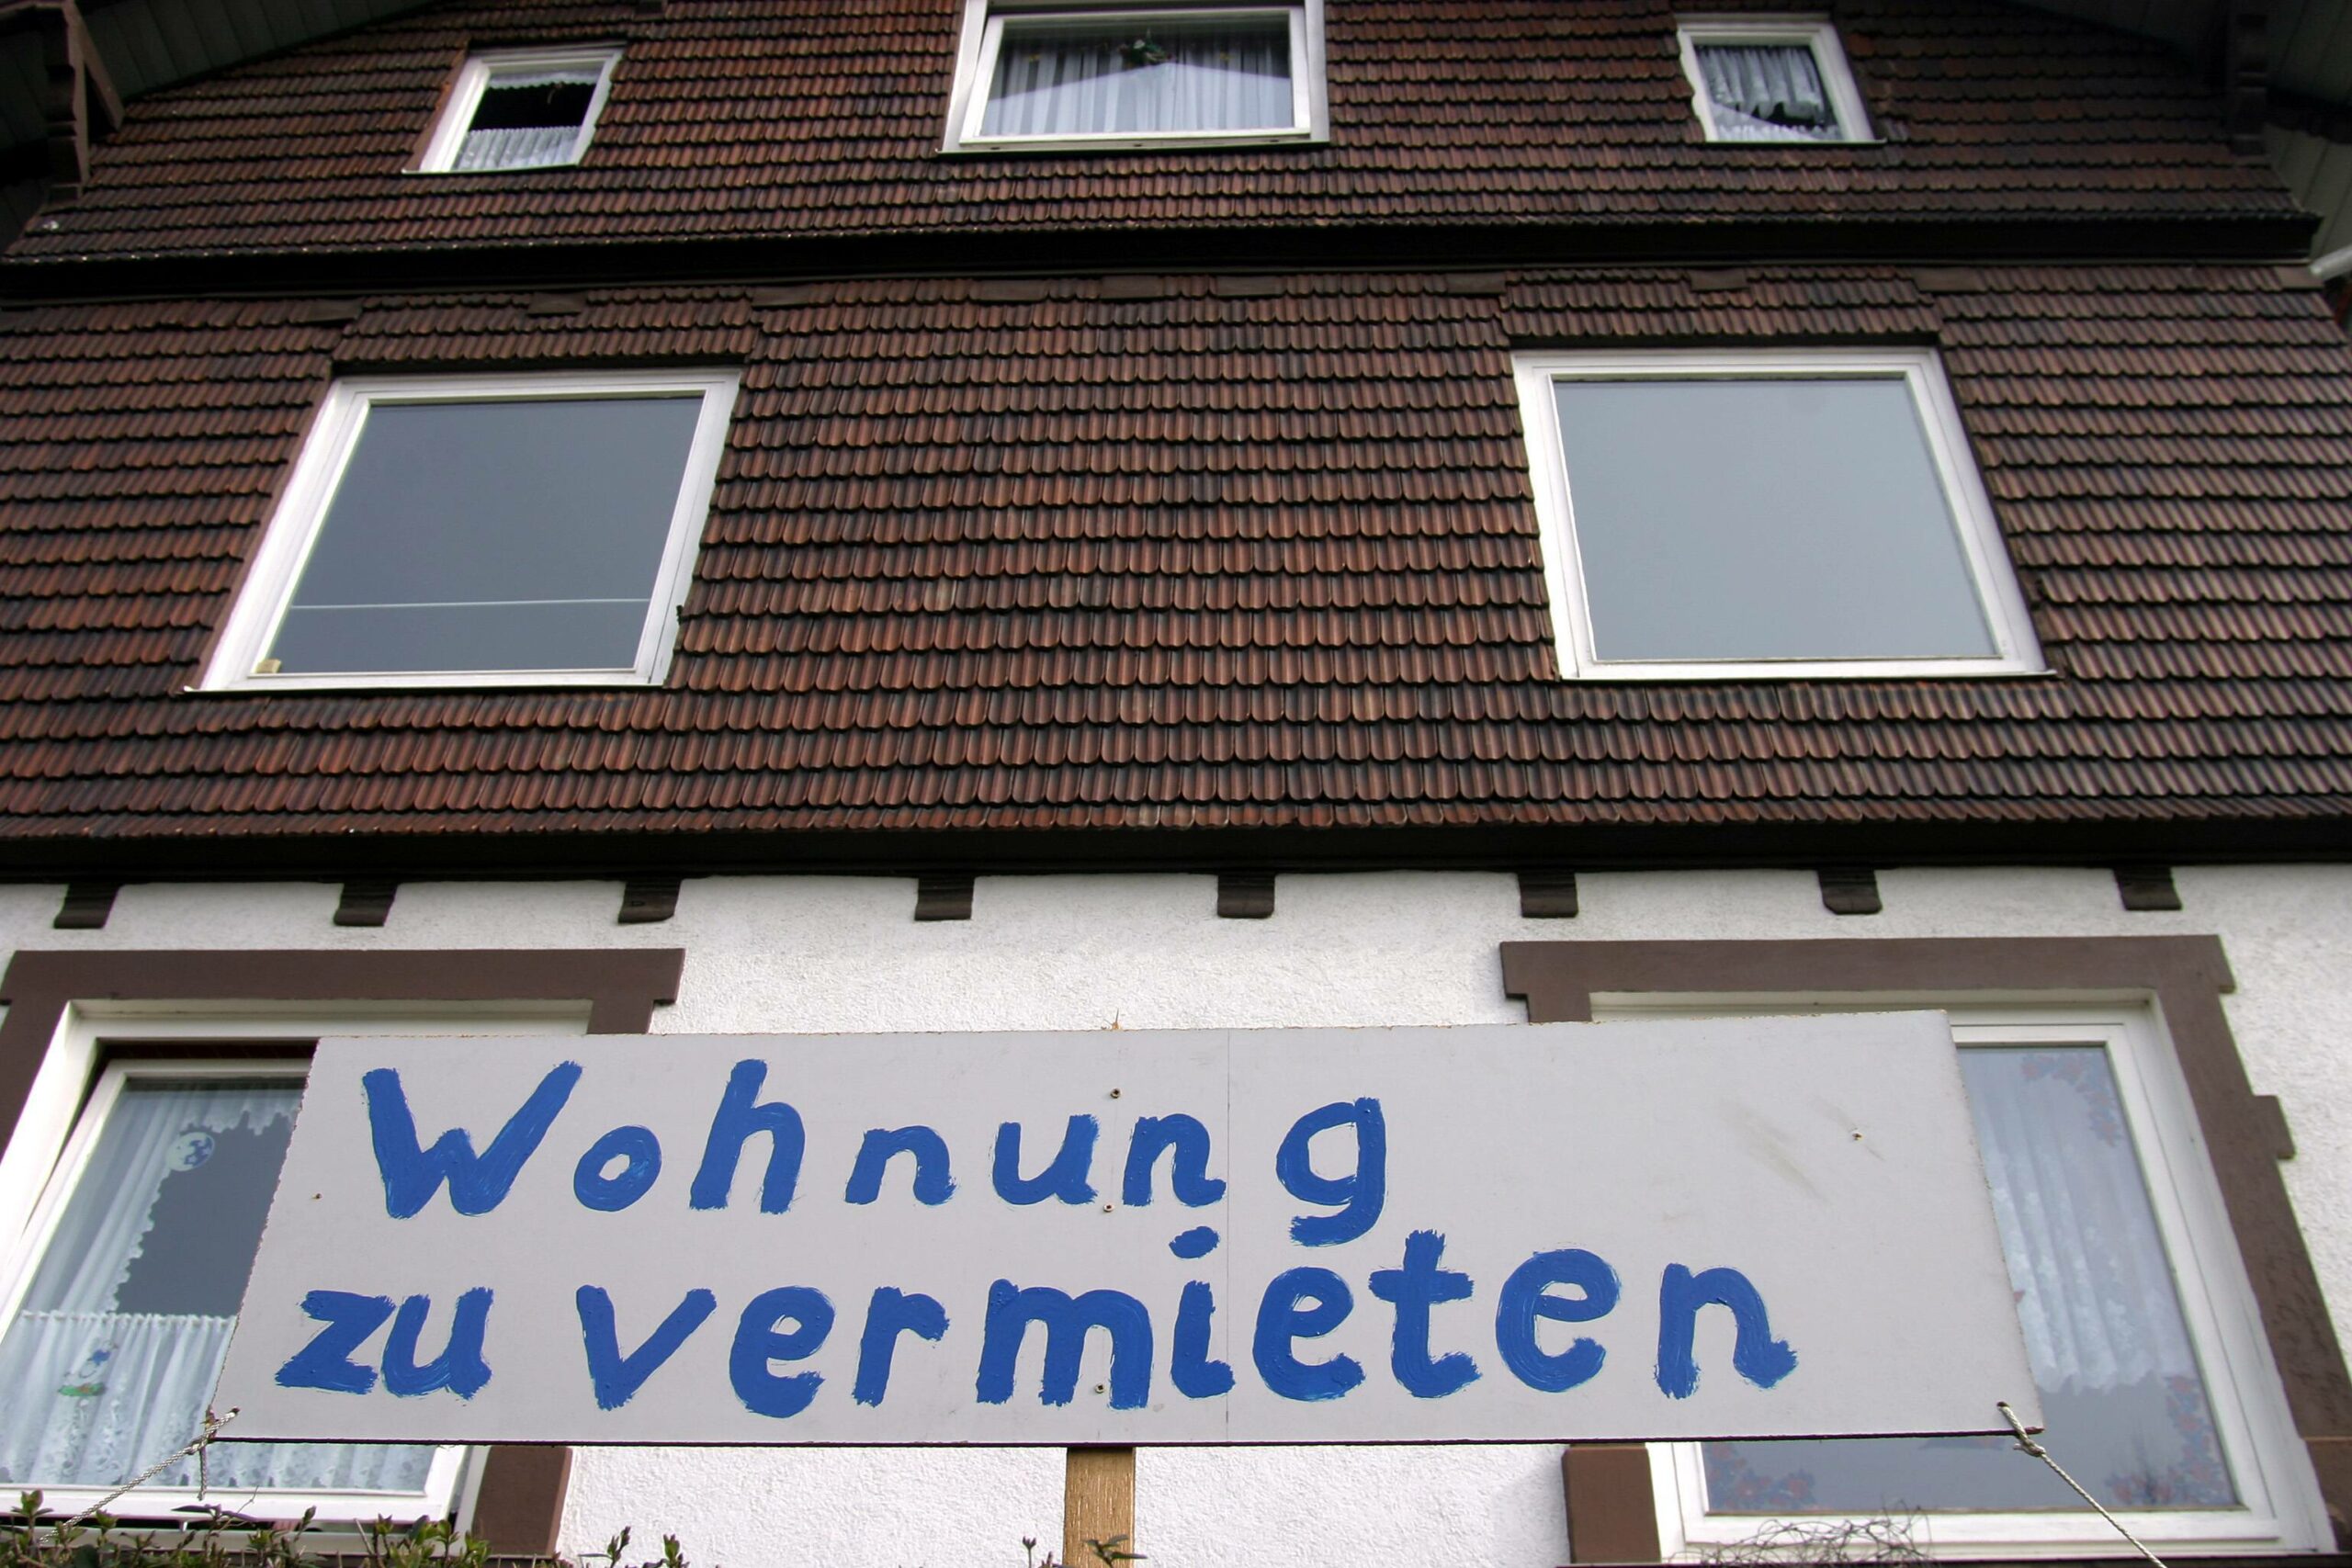 2004 waren die Wohnungen in Berlin billig, doch der Senat reagierte mit wegweisenden Entscheidungen, die die Situation auf dem Wohnungsmarkt zukünftig verschärfen sollten. Foto: Imago/Müller-Stauffenberg 